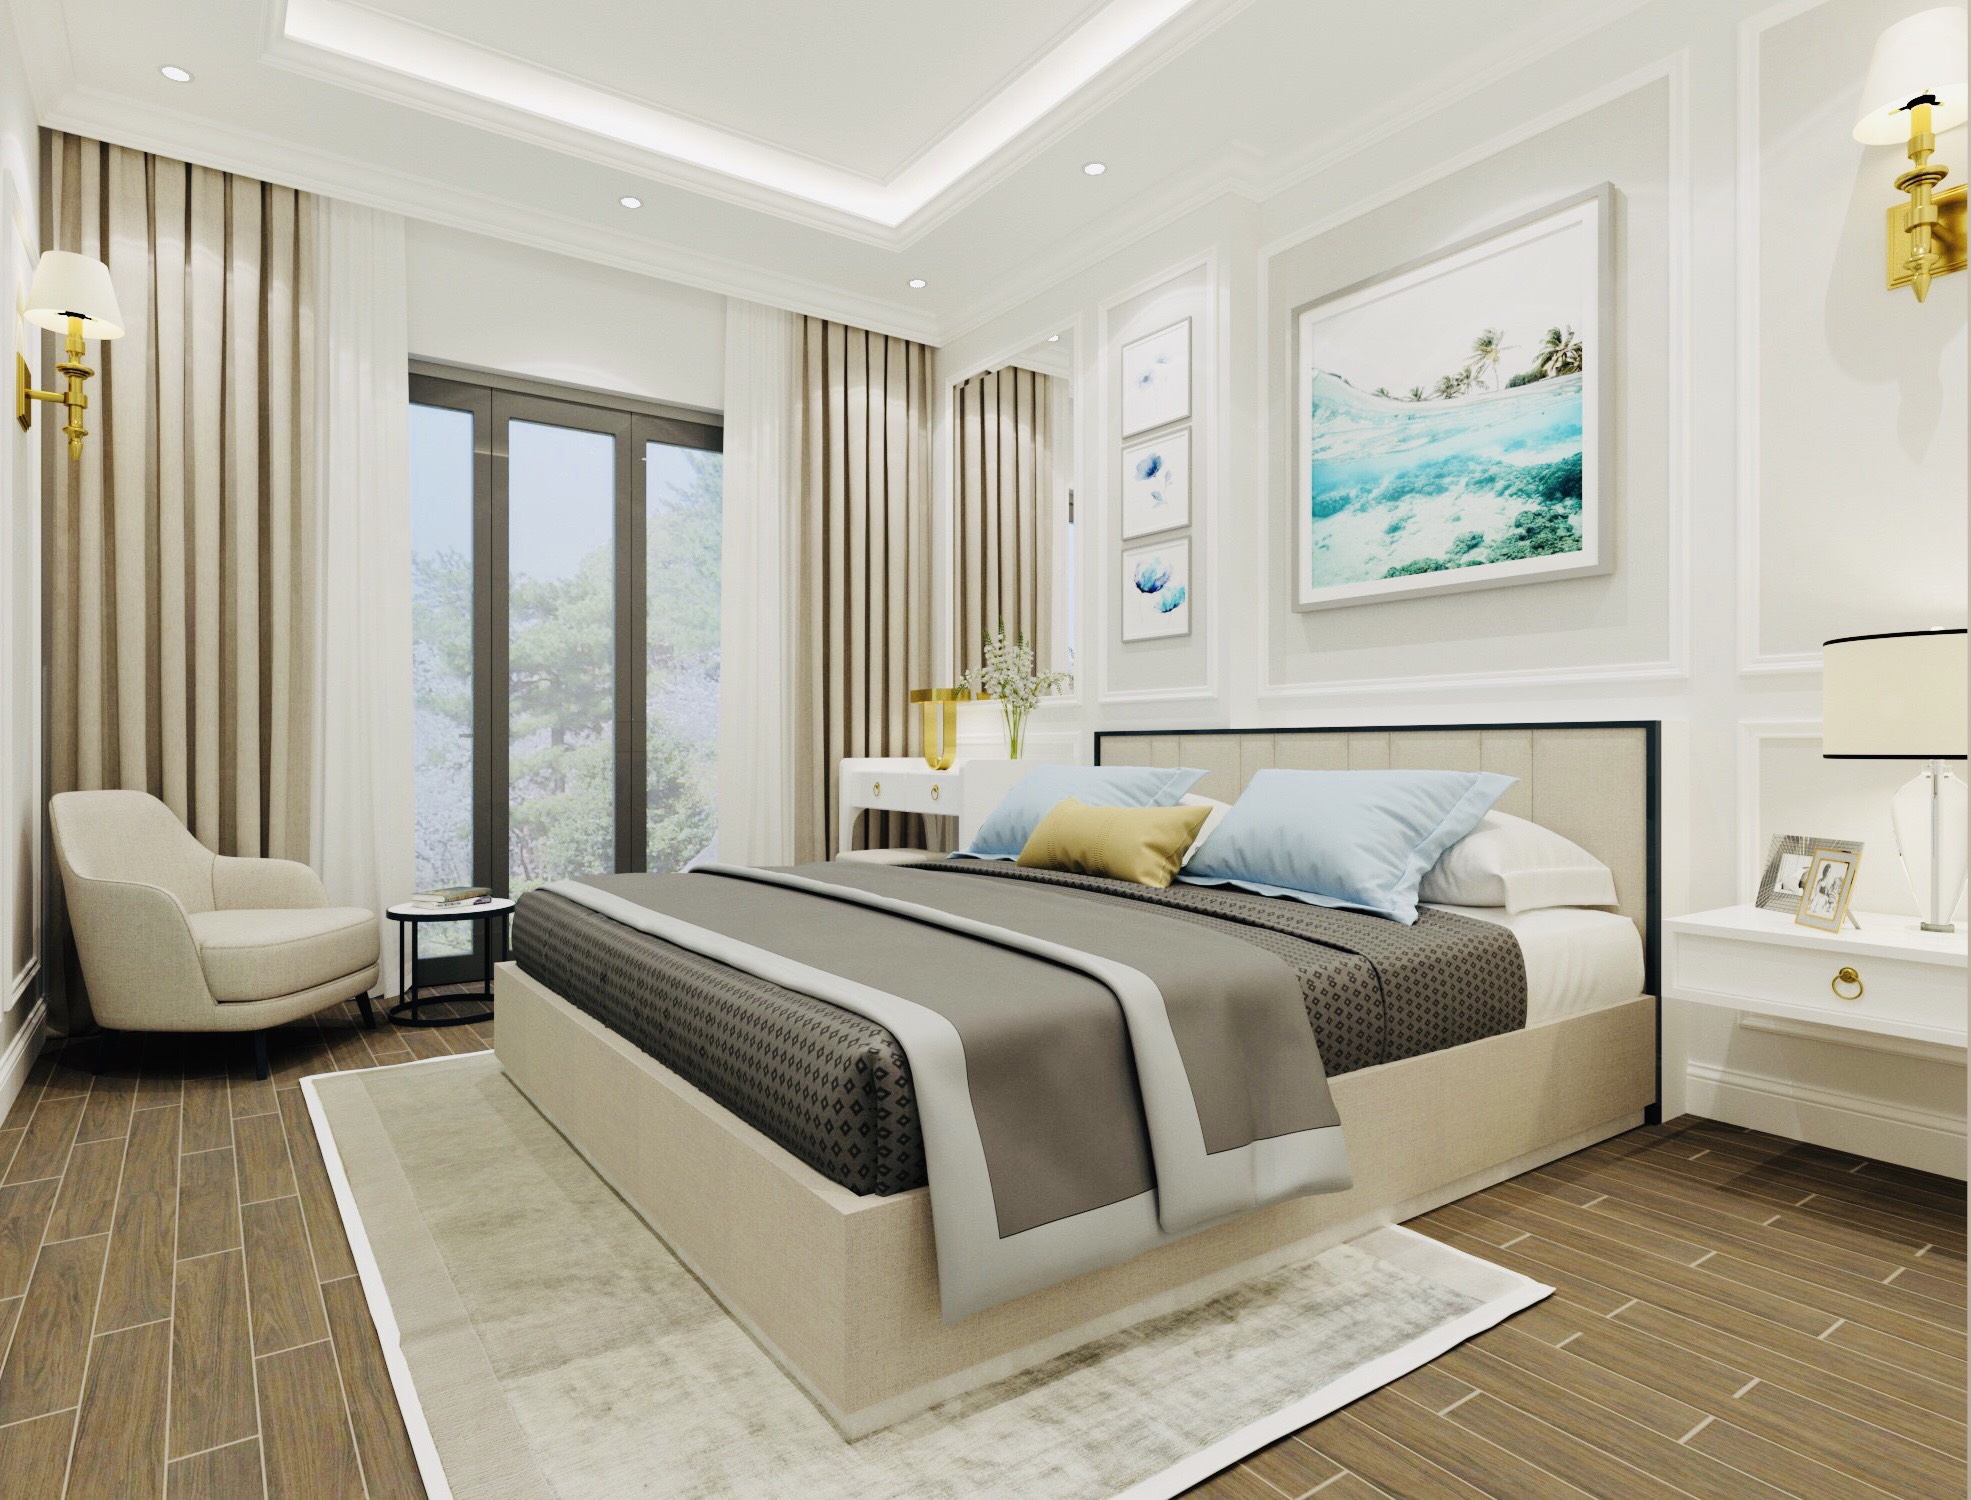 Thiết kế nội thất Chung Cư tại Hà Nội Thiết kế nội thất căn hộ tân cổ điển 96m2 dự án Thăng Long Capital 1602745619 5